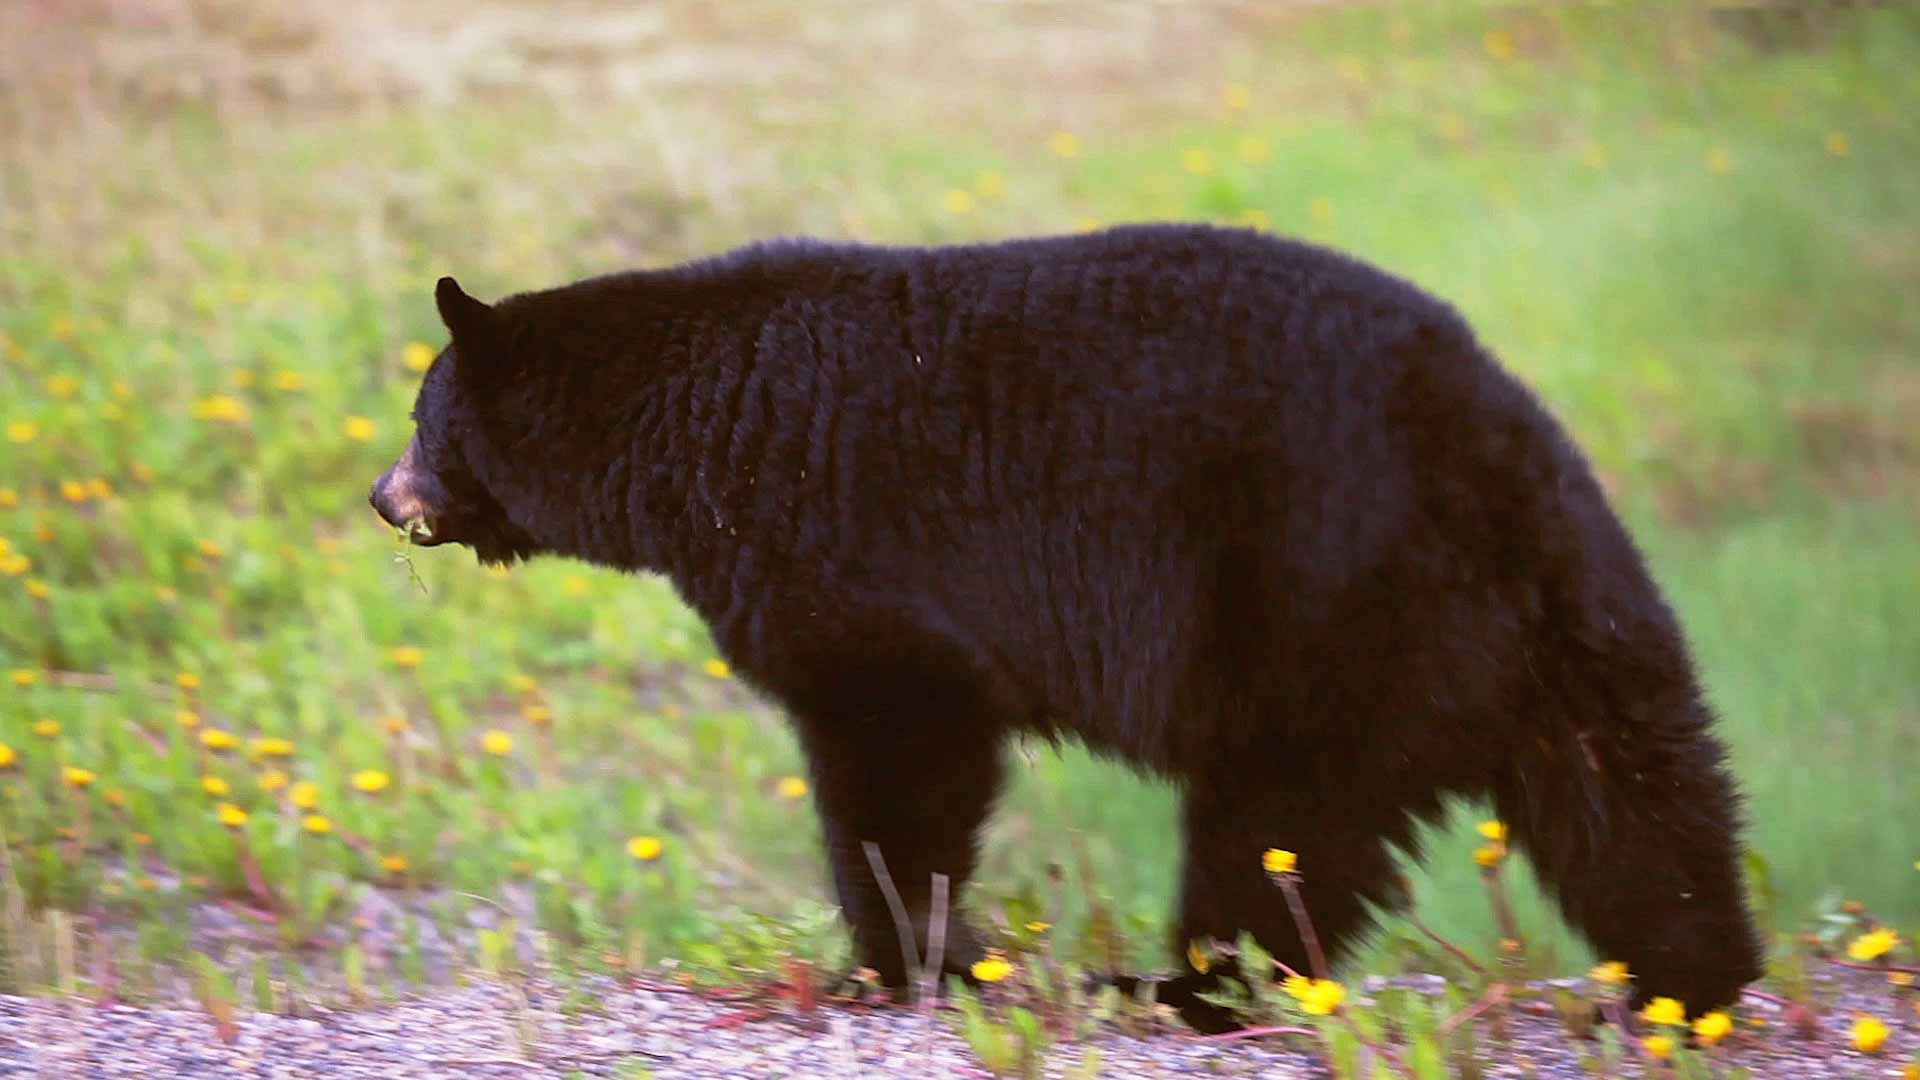 Black bear in Maine walking in field